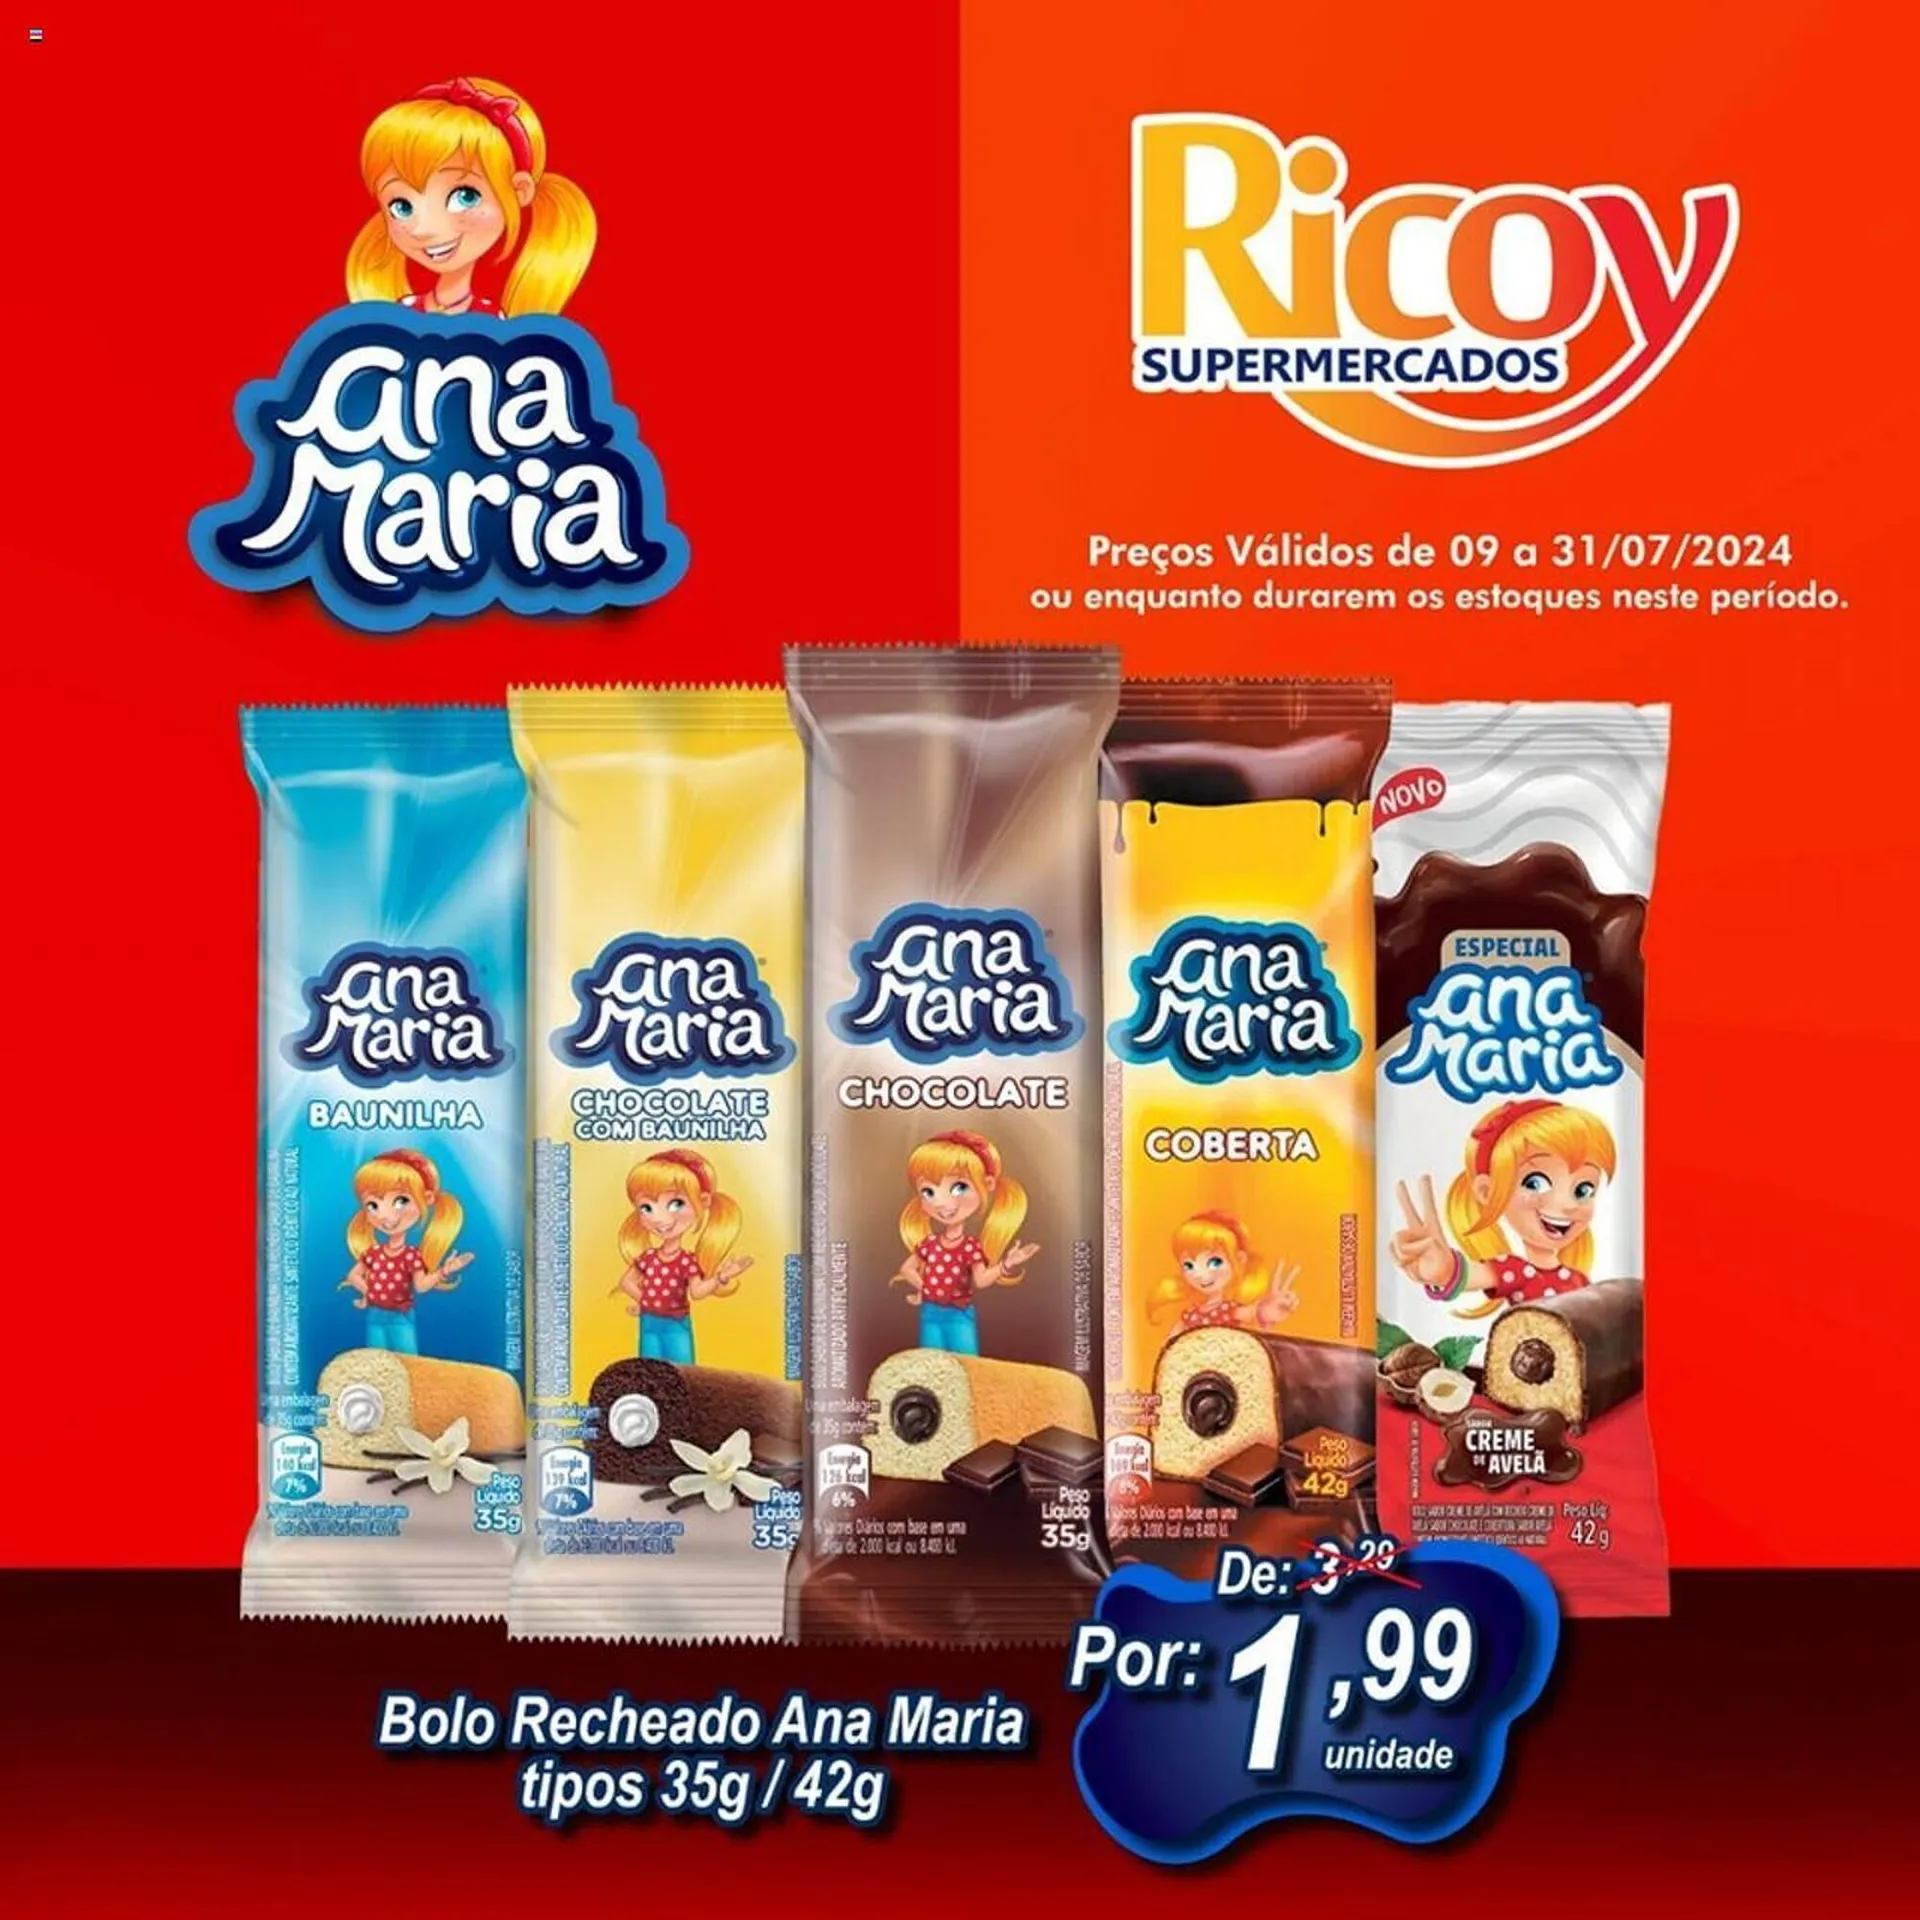 Catálogo Ricoy Supermercados - 1